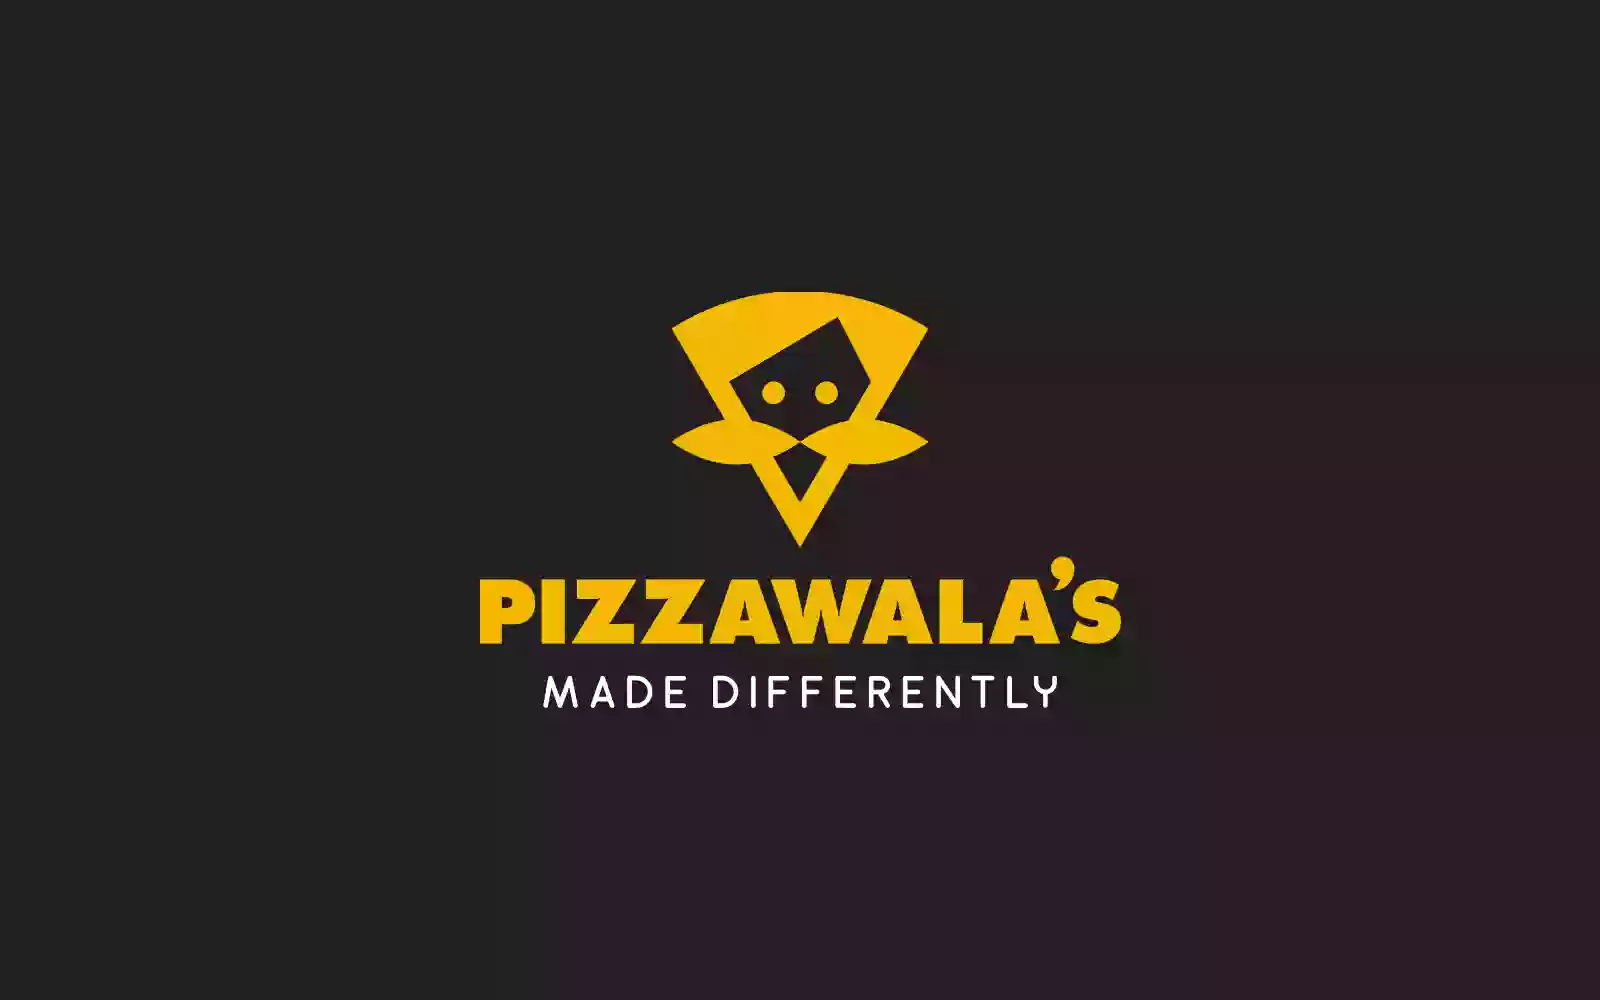 Pizzawala's